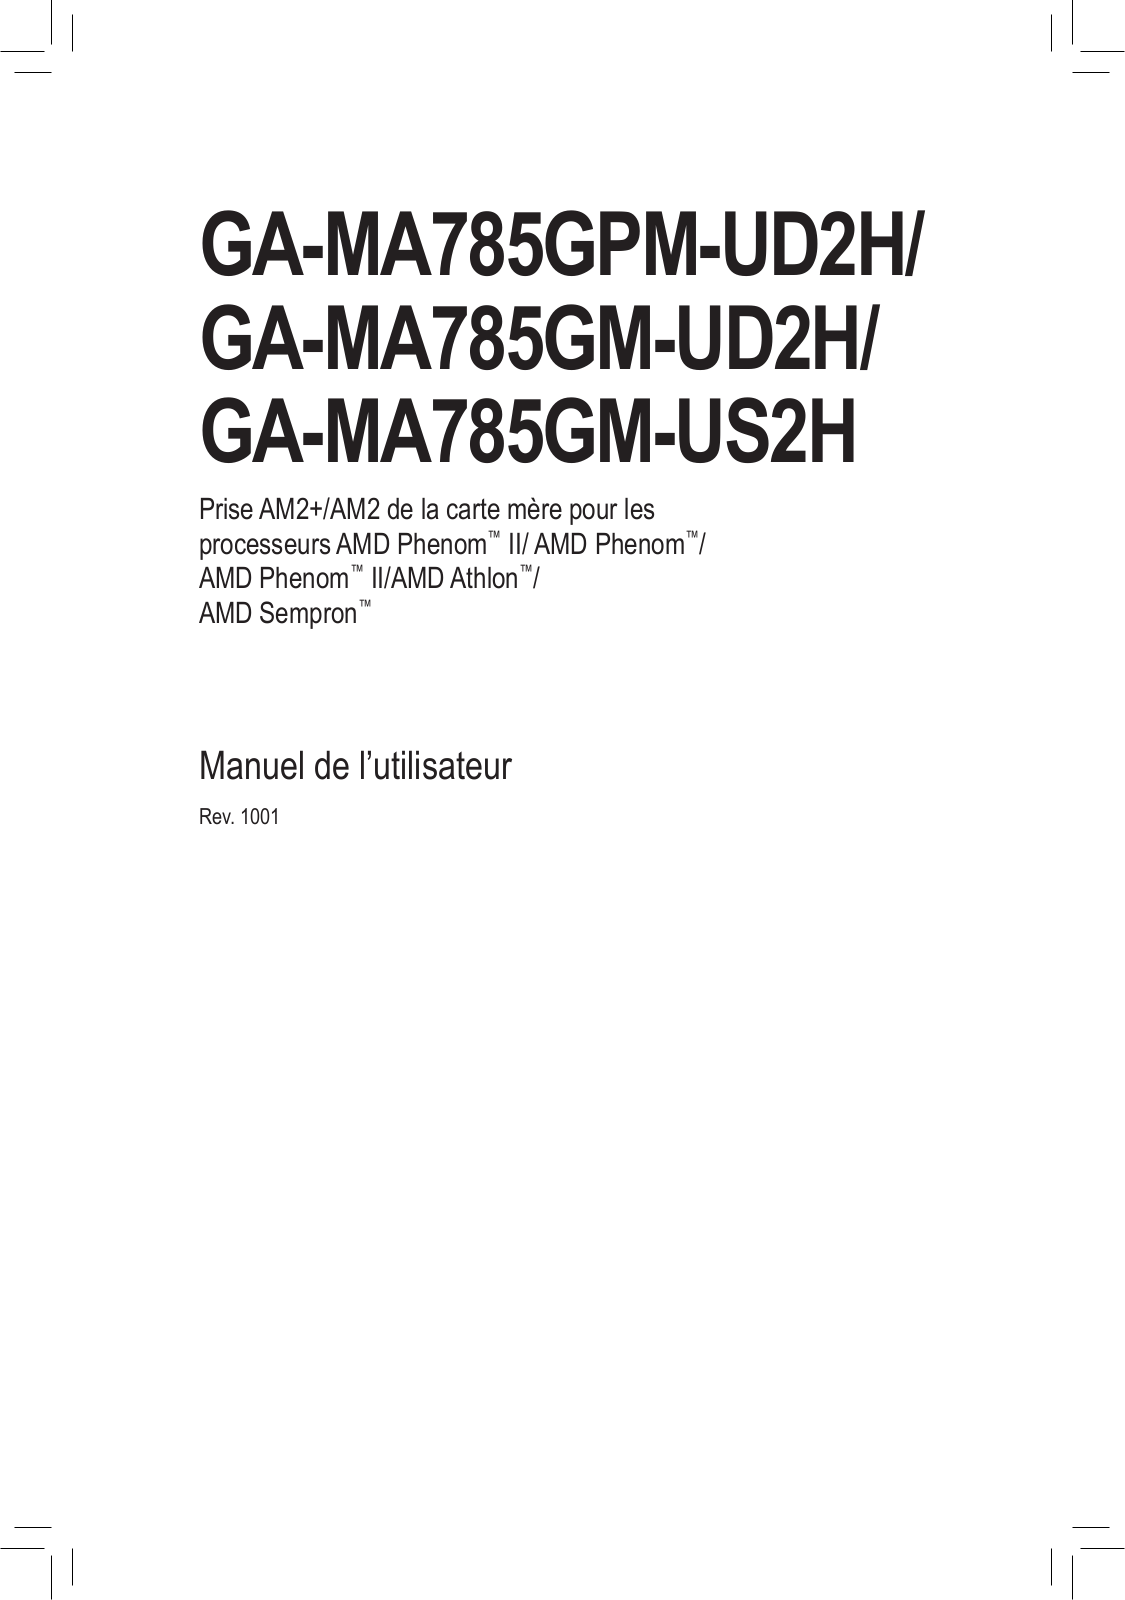 GIGABYTE GA-MA785GM-US2H, GA-MA785GPM-UD2H User Manual